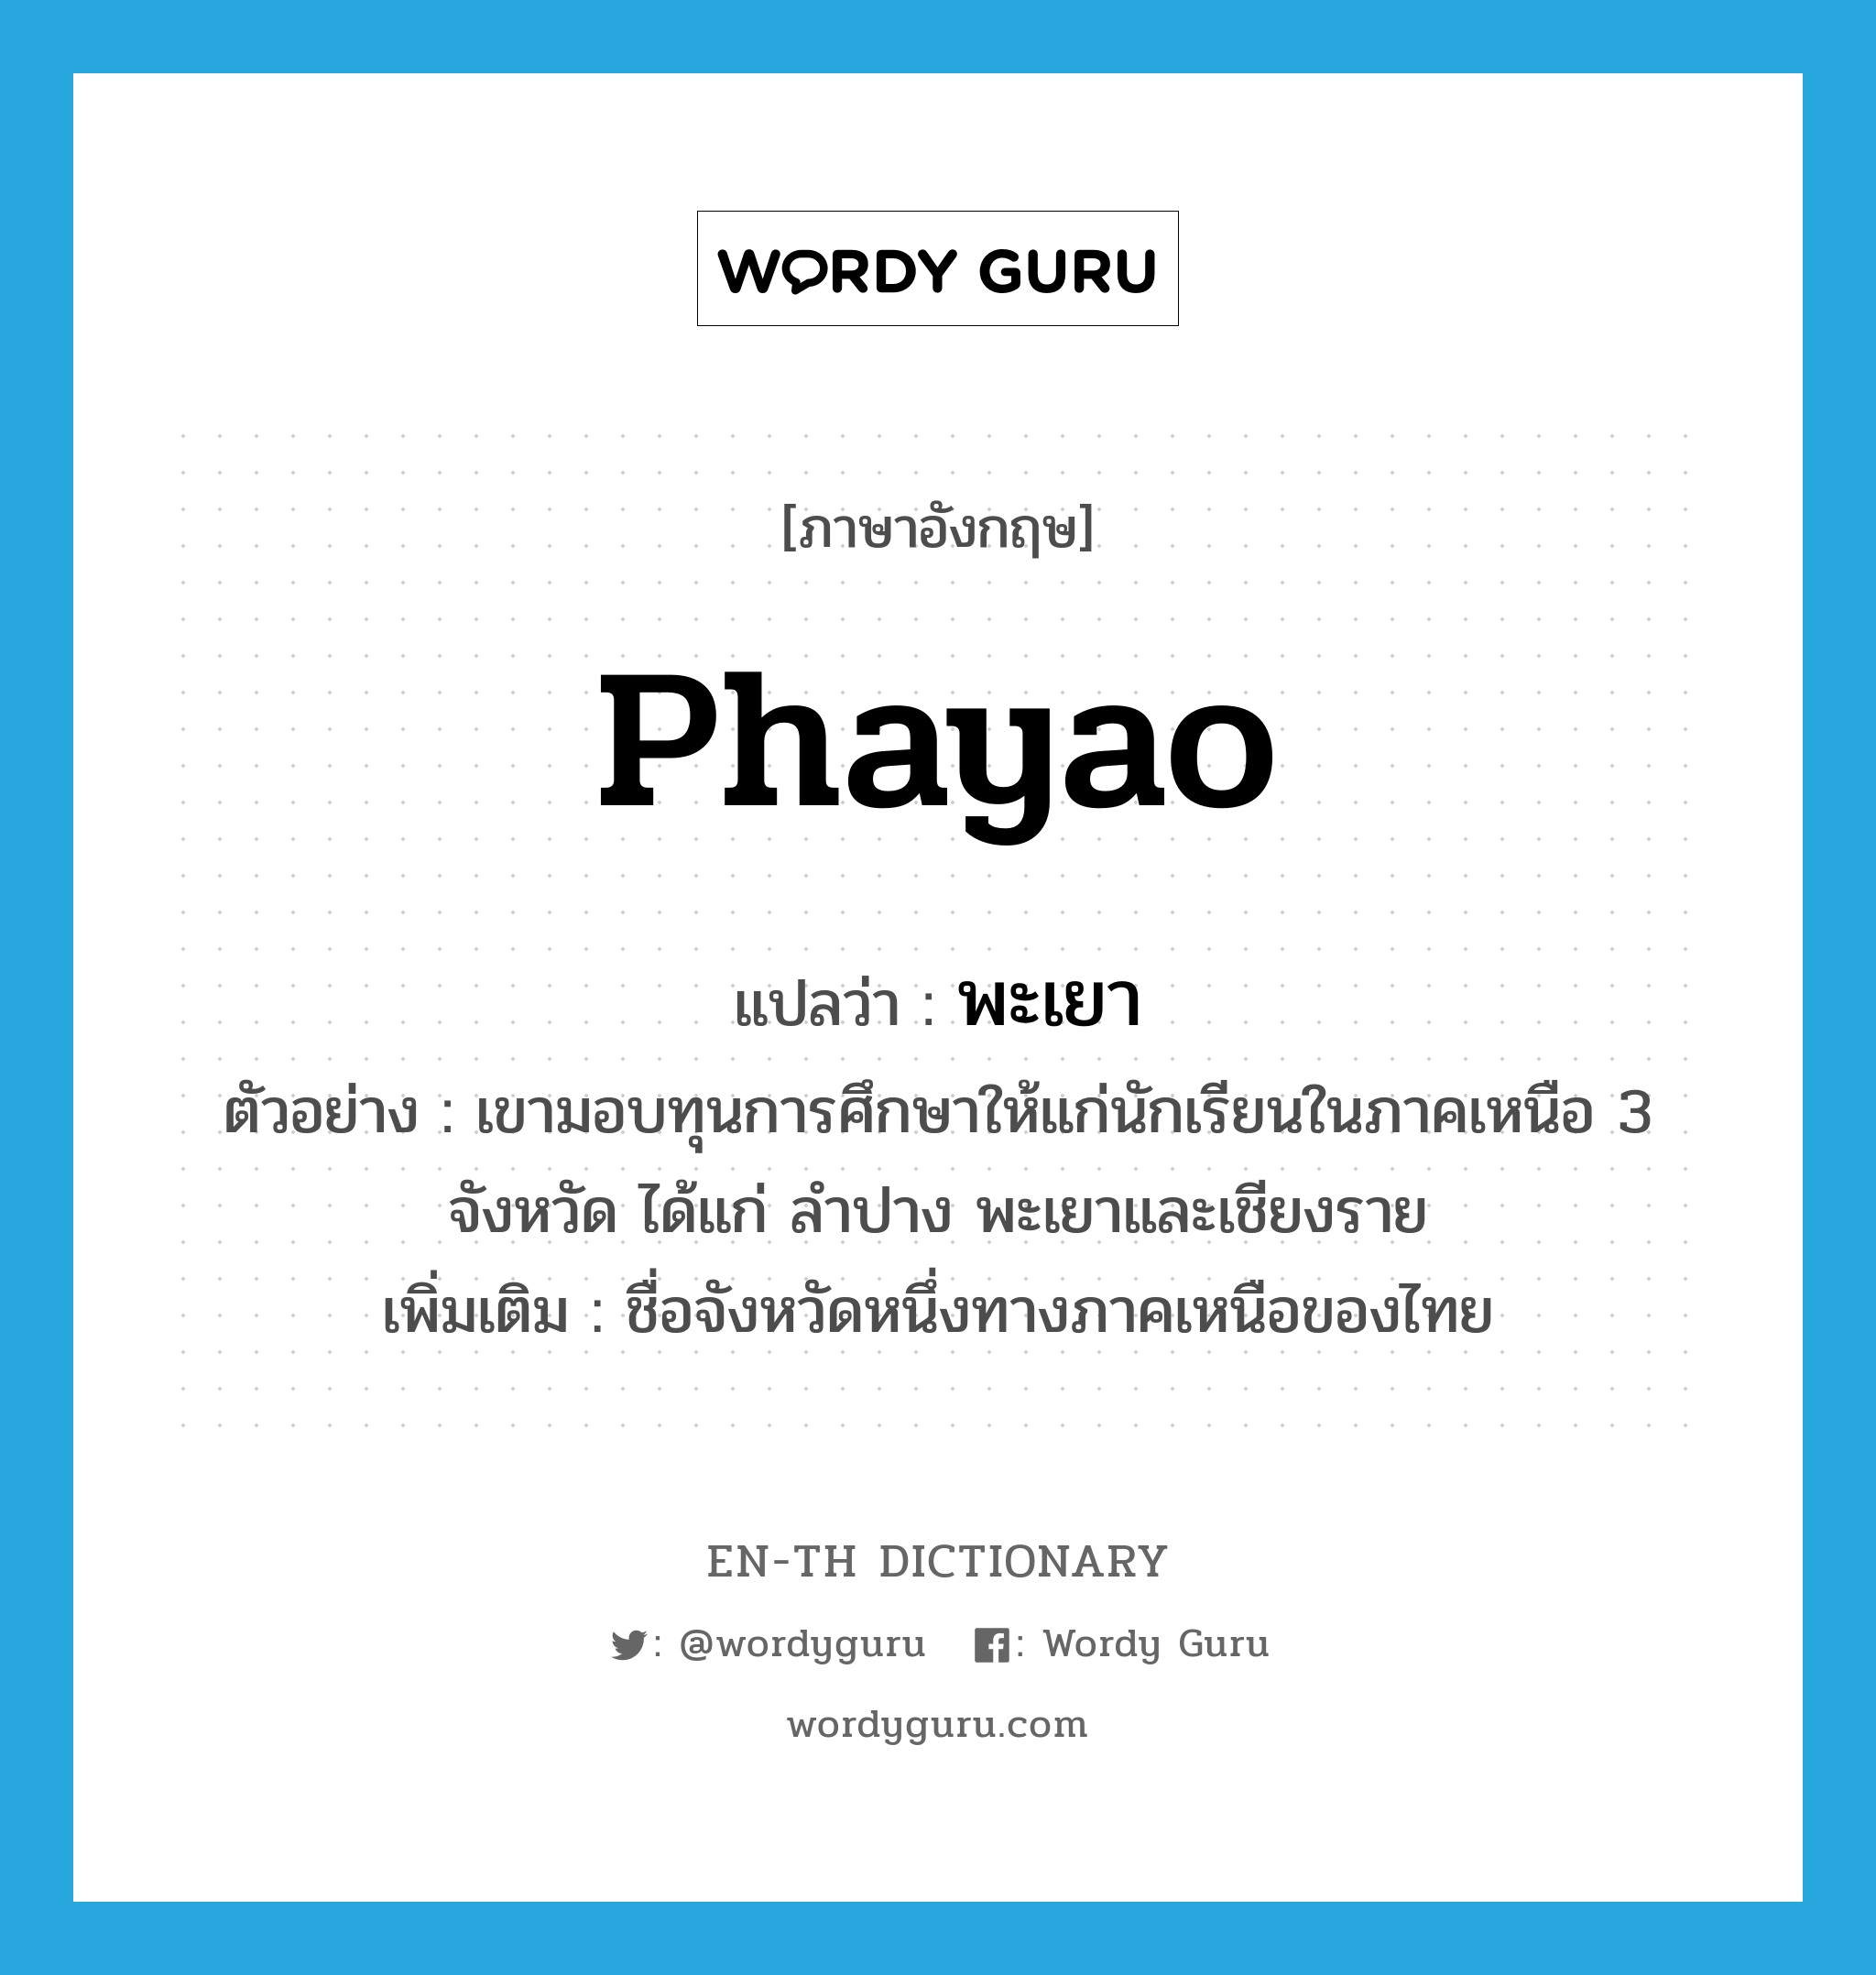 พะเยา ภาษาอังกฤษ?, คำศัพท์ภาษาอังกฤษ พะเยา แปลว่า Phayao ประเภท N ตัวอย่าง เขามอบทุนการศึกษาให้แก่นักเรียนในภาคเหนือ 3 จังหวัด ได้แก่ ลำปาง พะเยาและเชียงราย เพิ่มเติม ชื่อจังหวัดหนึ่งทางภาคเหนือของไทย หมวด N